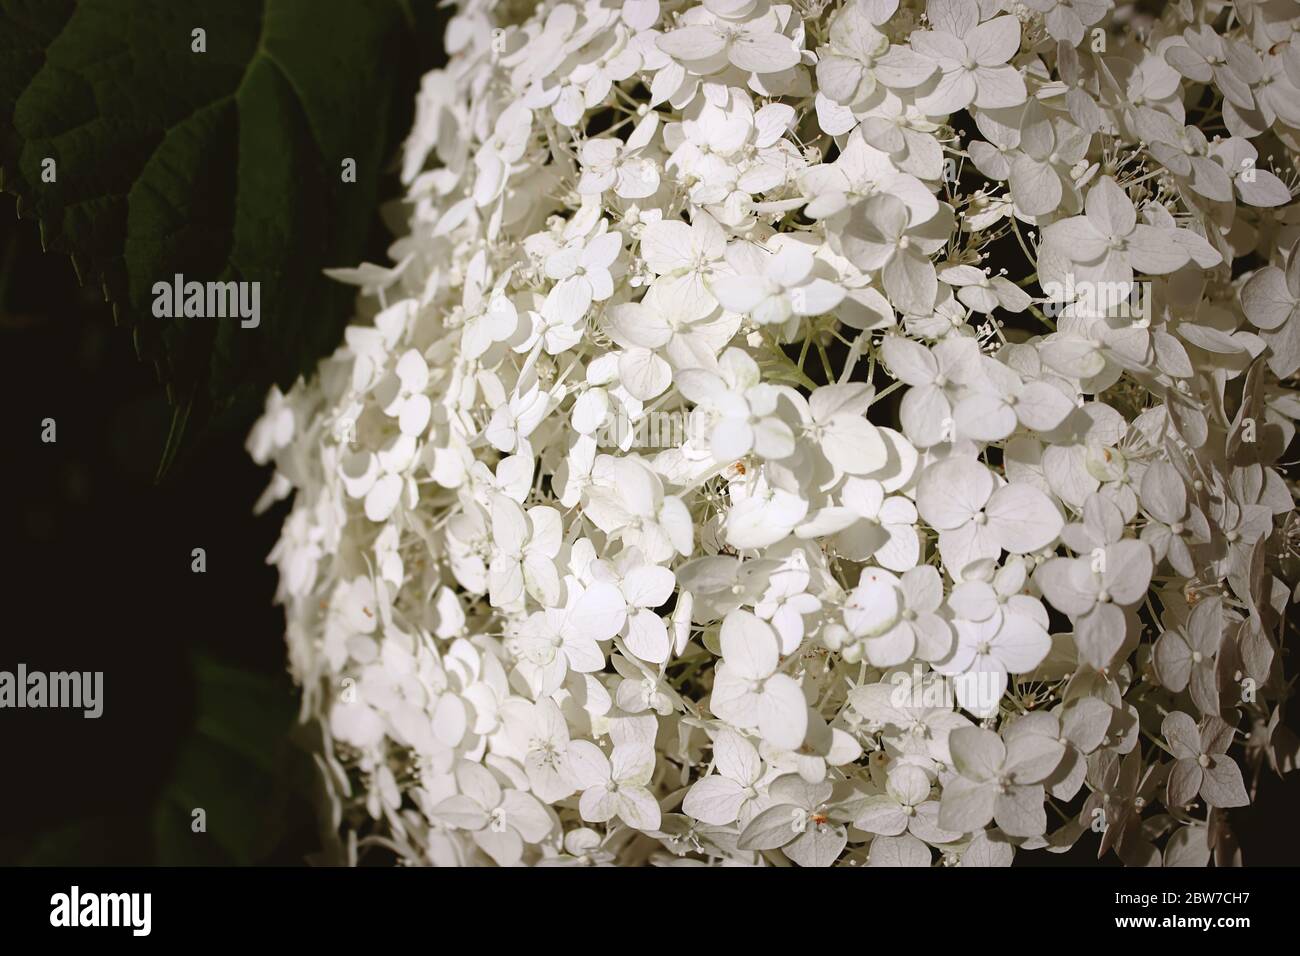 Hydrangea macrophylla est un beau Bush de fleurs de macromylla d'hortensia blanc qui fleurissent dans le jardin en été. Gros plan, mise au point douce, bruit supplémentaire Banque D'Images